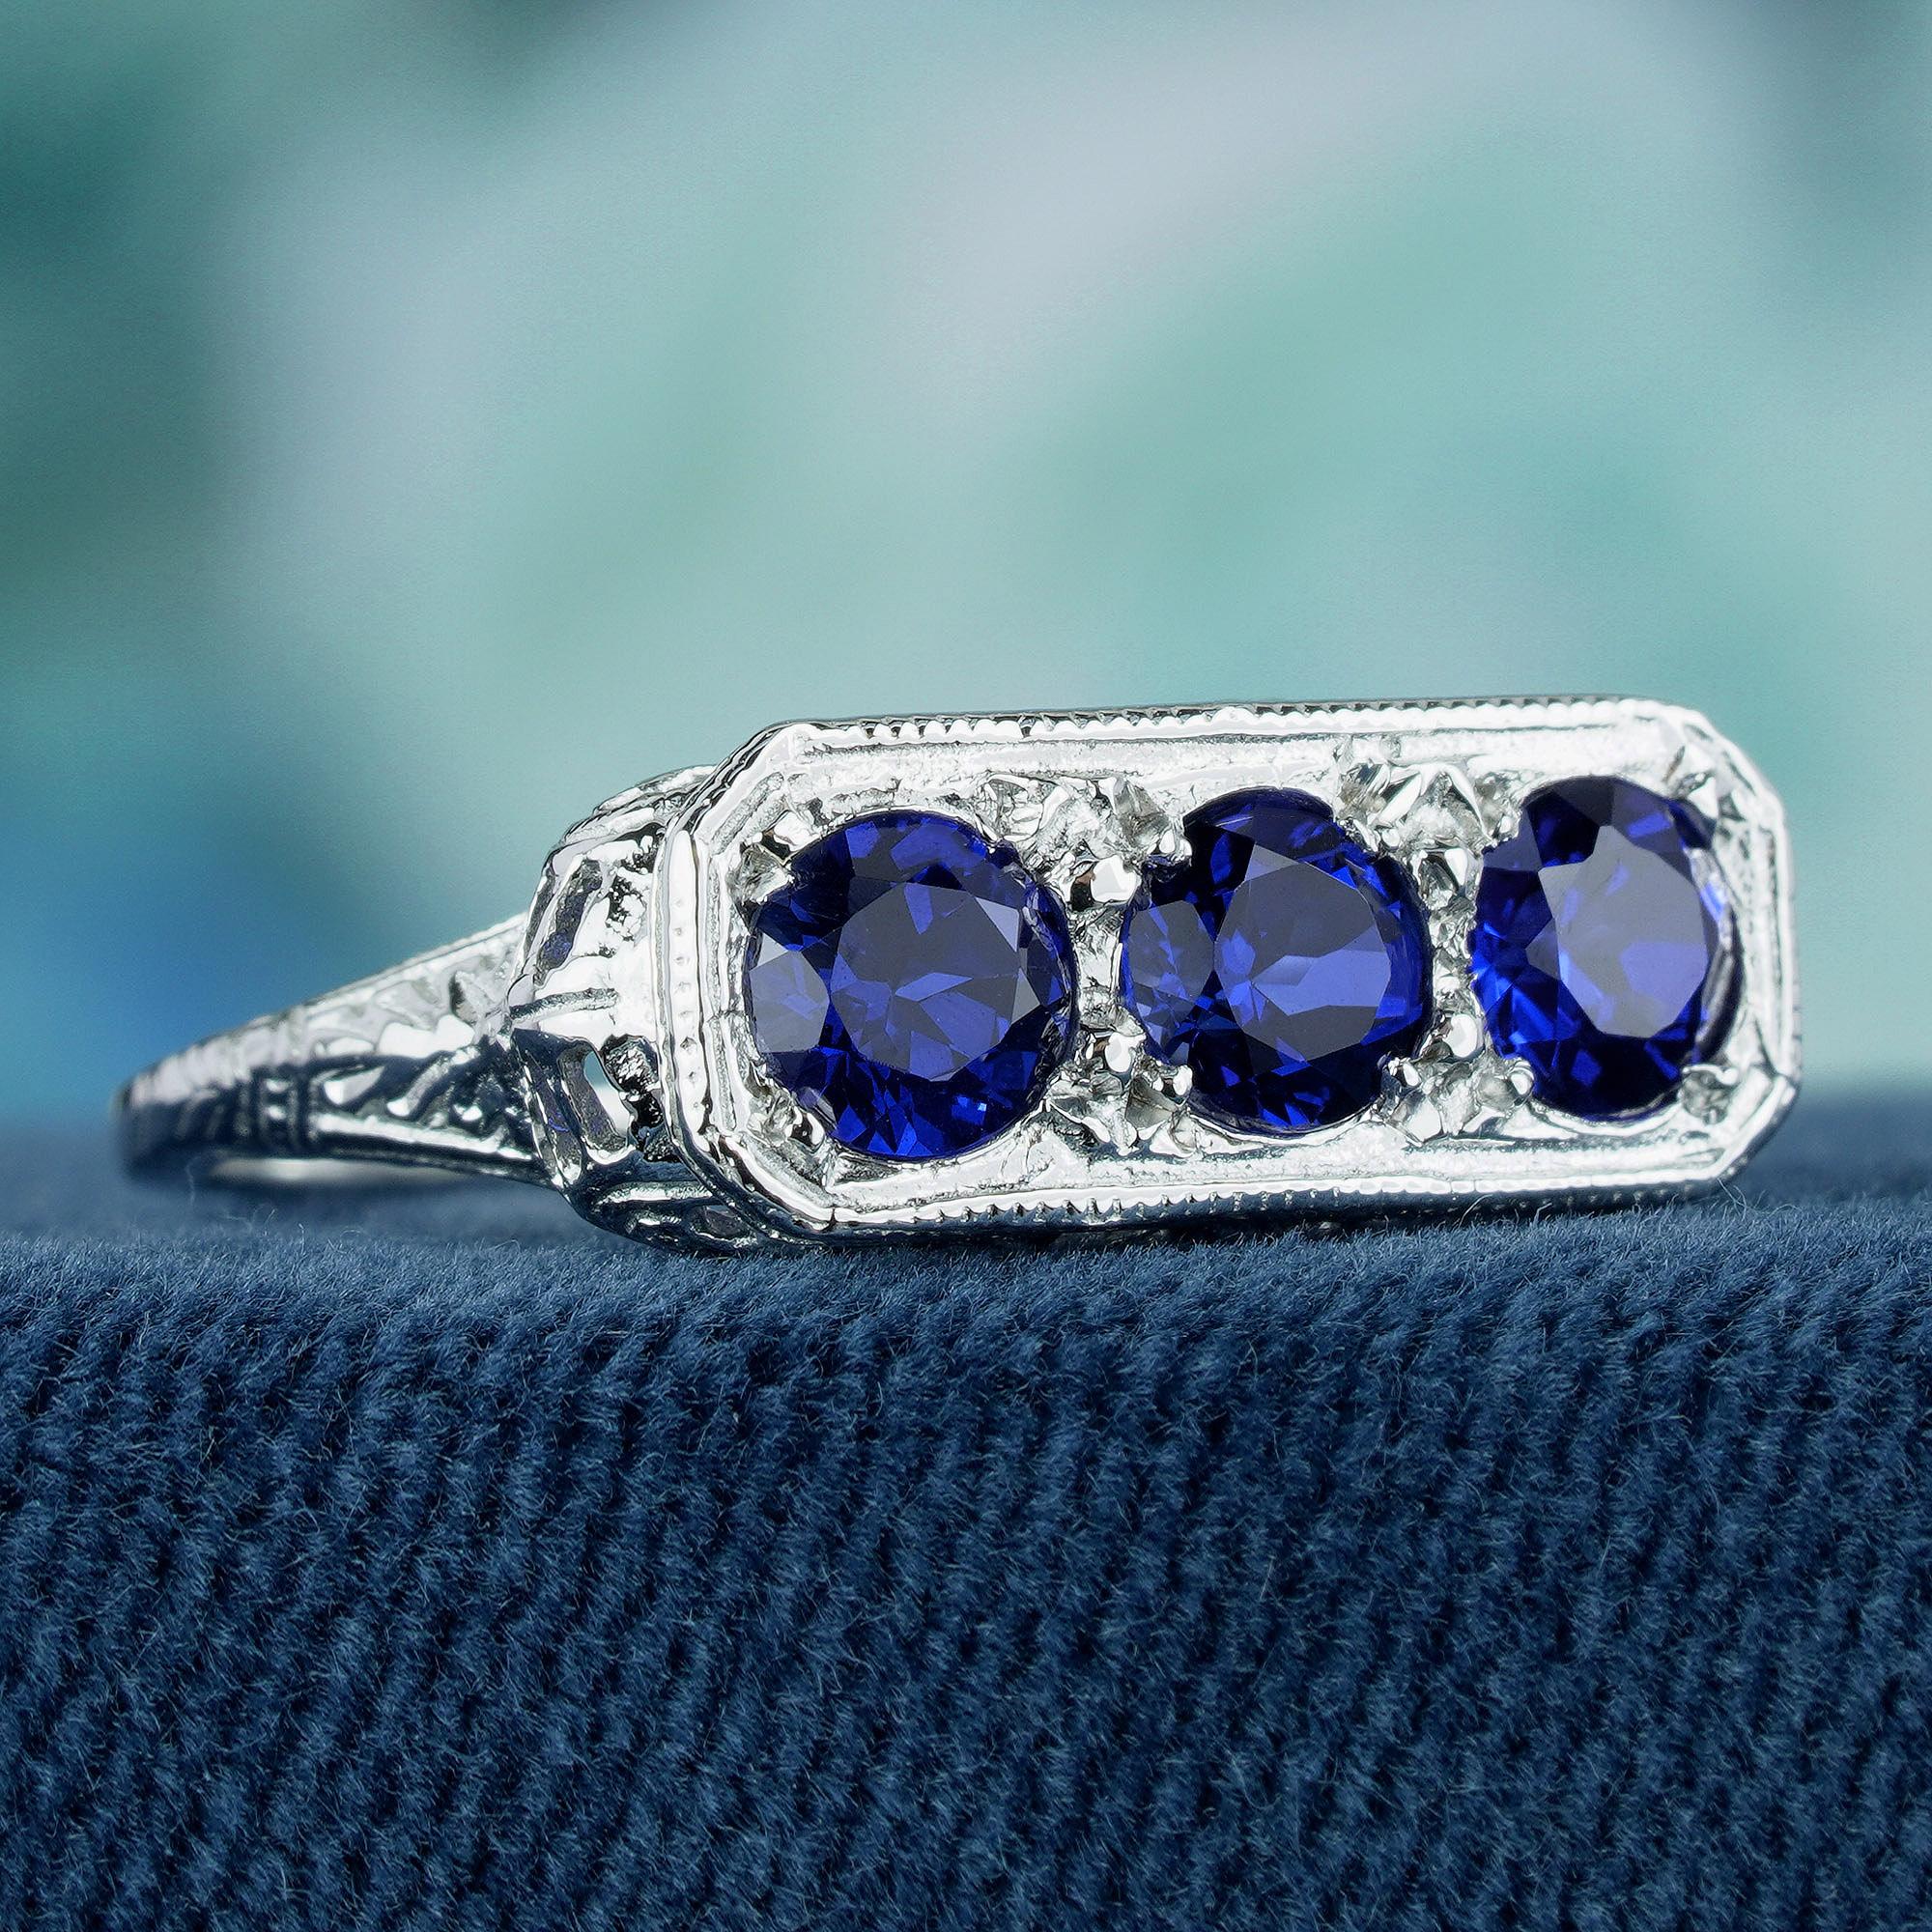 Dieser exquisite Ring mit drei Steinen strahlt zeitlose Eleganz aus. Er präsentiert faszinierende runde, natürliche blaue Saphire, die in Zacken eines glänzenden Weißgoldbandes eingefasst sind. Der mit filigranen Details verzierte Ring strahlt